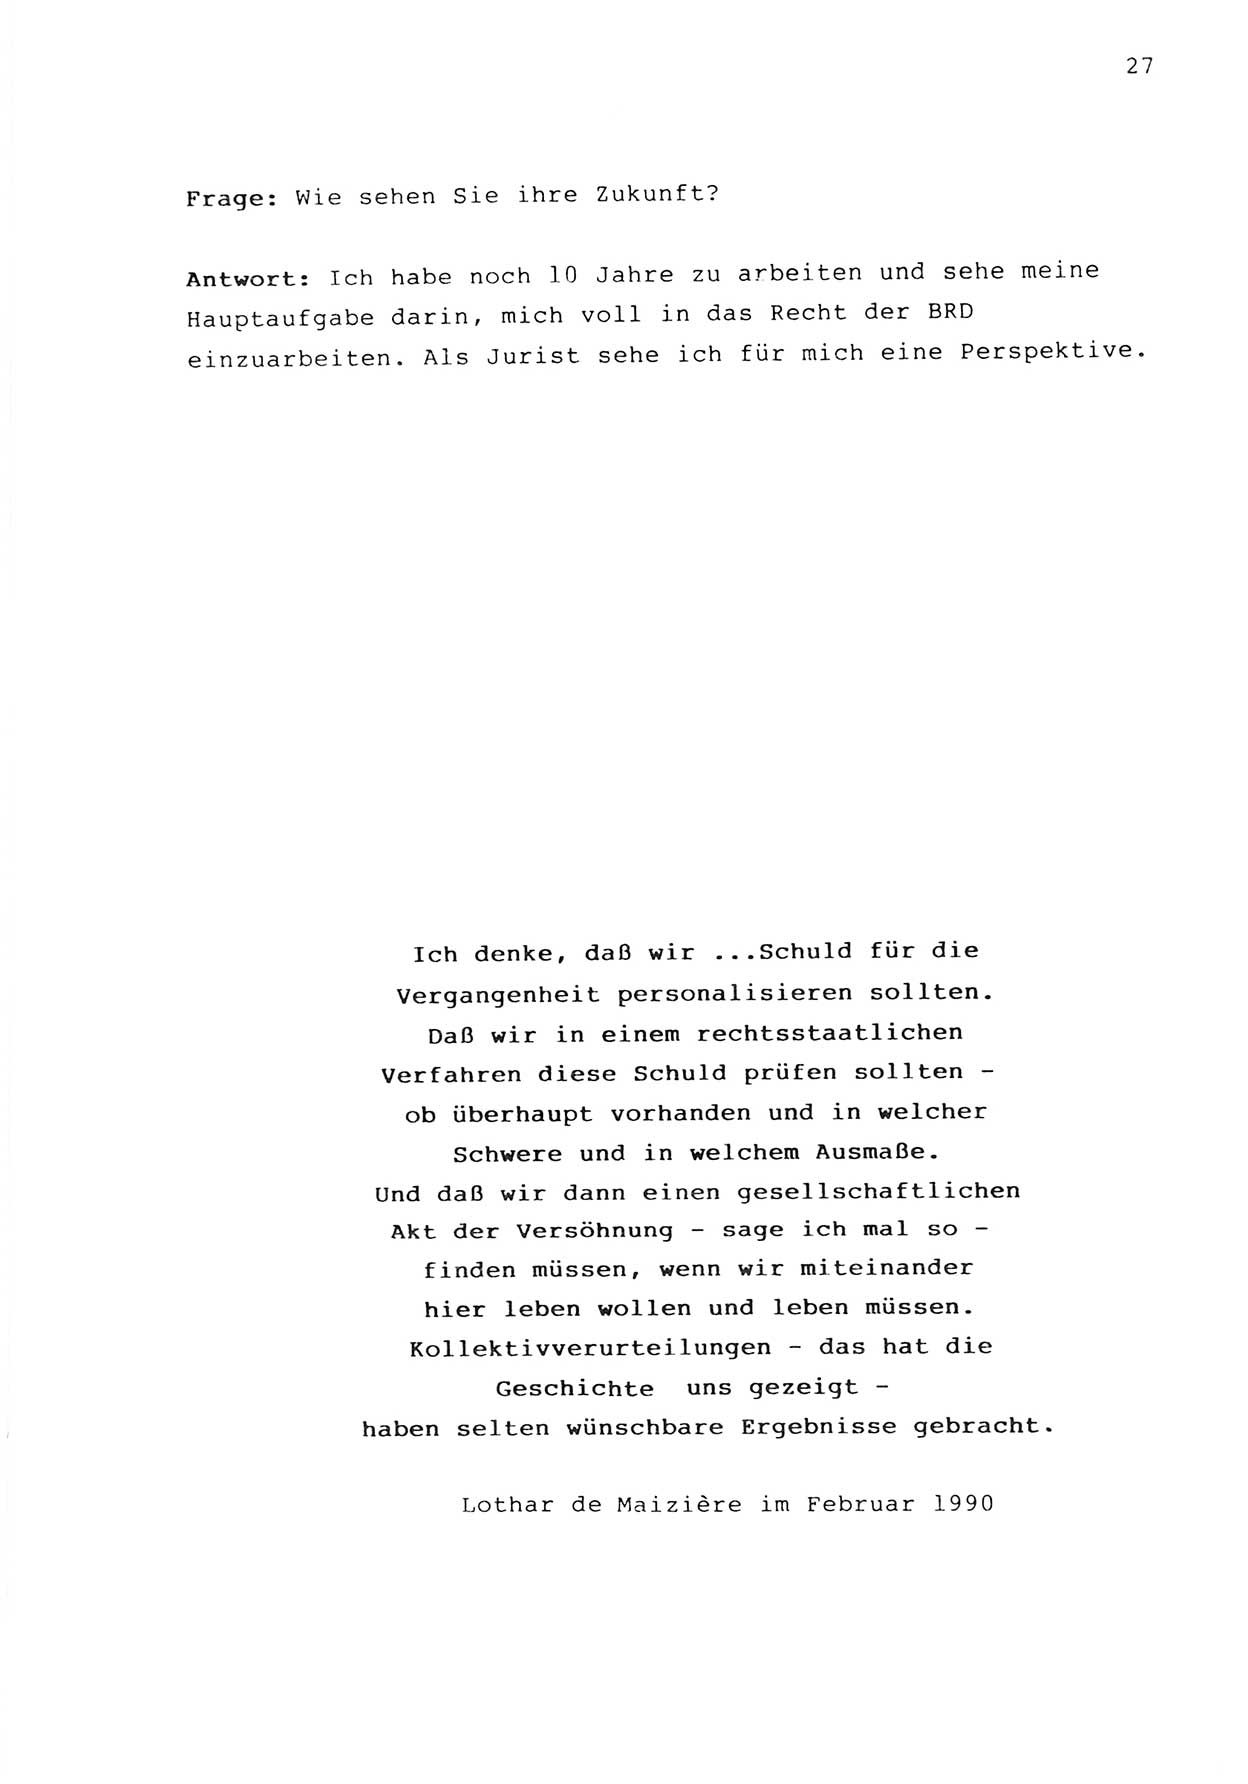 Zwie-Gespräch, Beiträge zur Bewältigung der Stasi-Vergangenheit [Deutsche Demokratische Republik (DDR)], Ausgabe Nr. 1, Berlin 1991, Seite 27 (Zwie-Gespr. Ausg. 1 1991, S. 27)